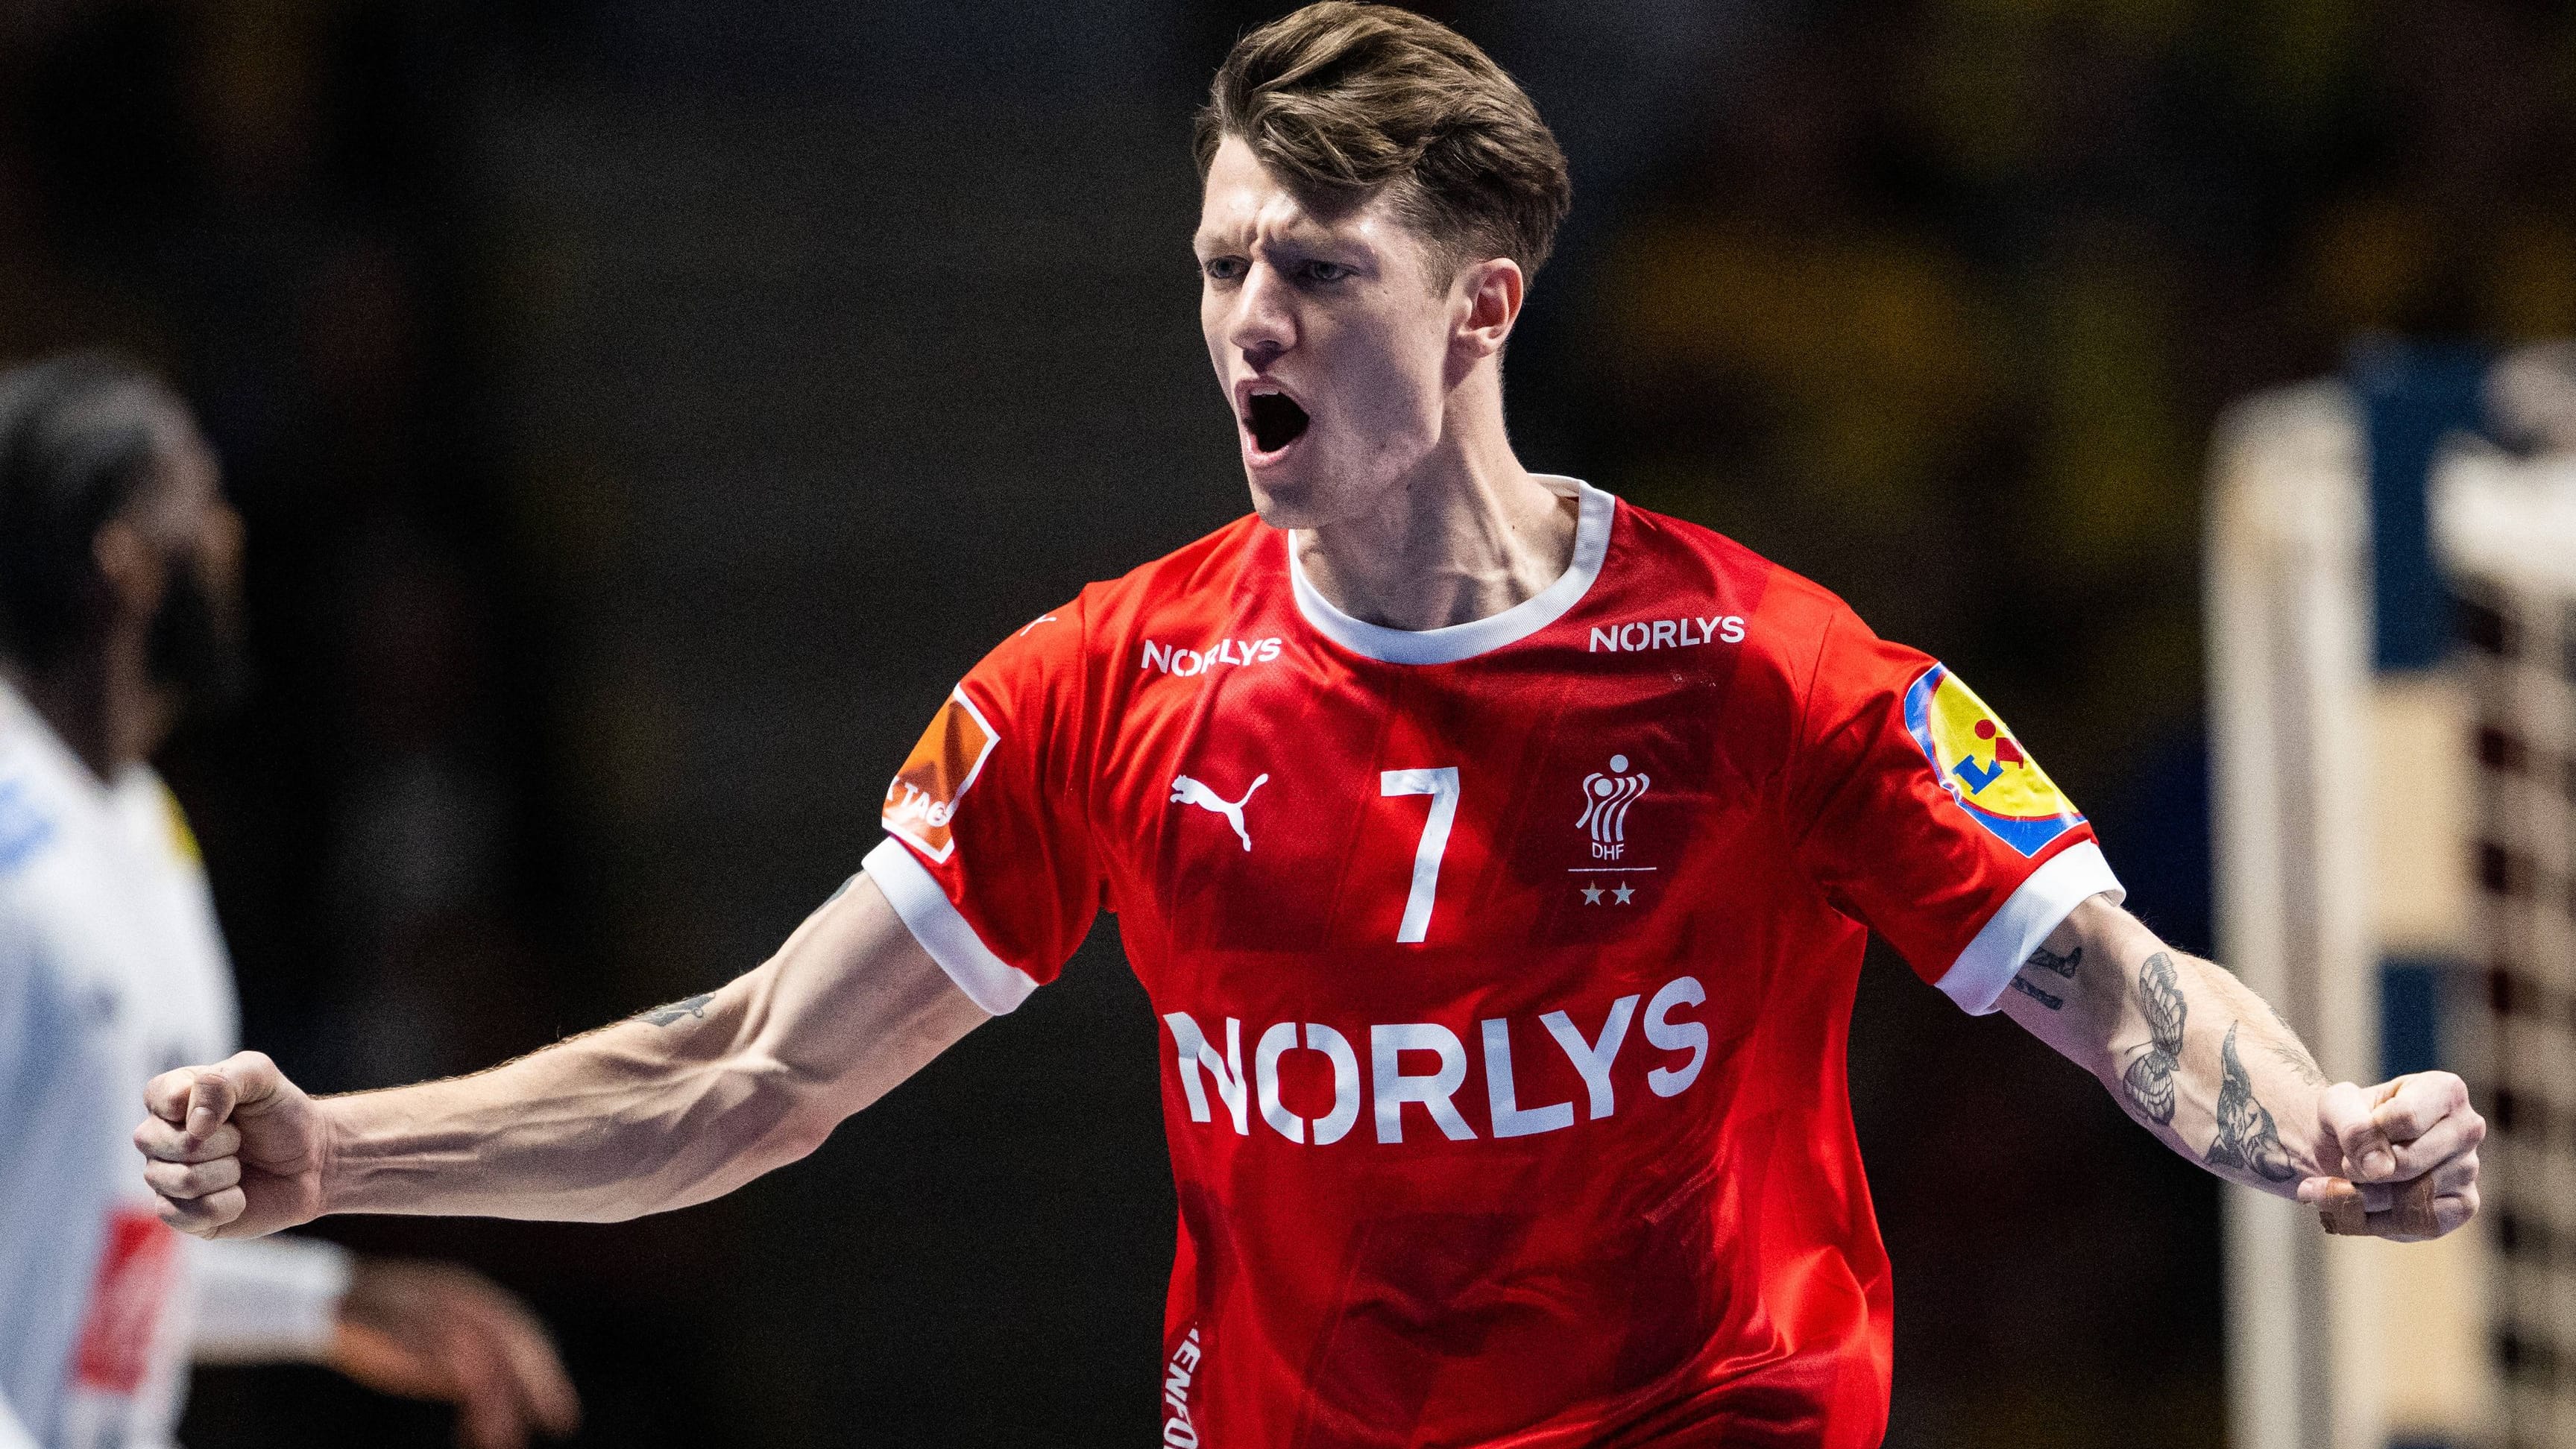 Finale der Handball-WM | Dänemark schlägt Frankreich und ist Weltmeister